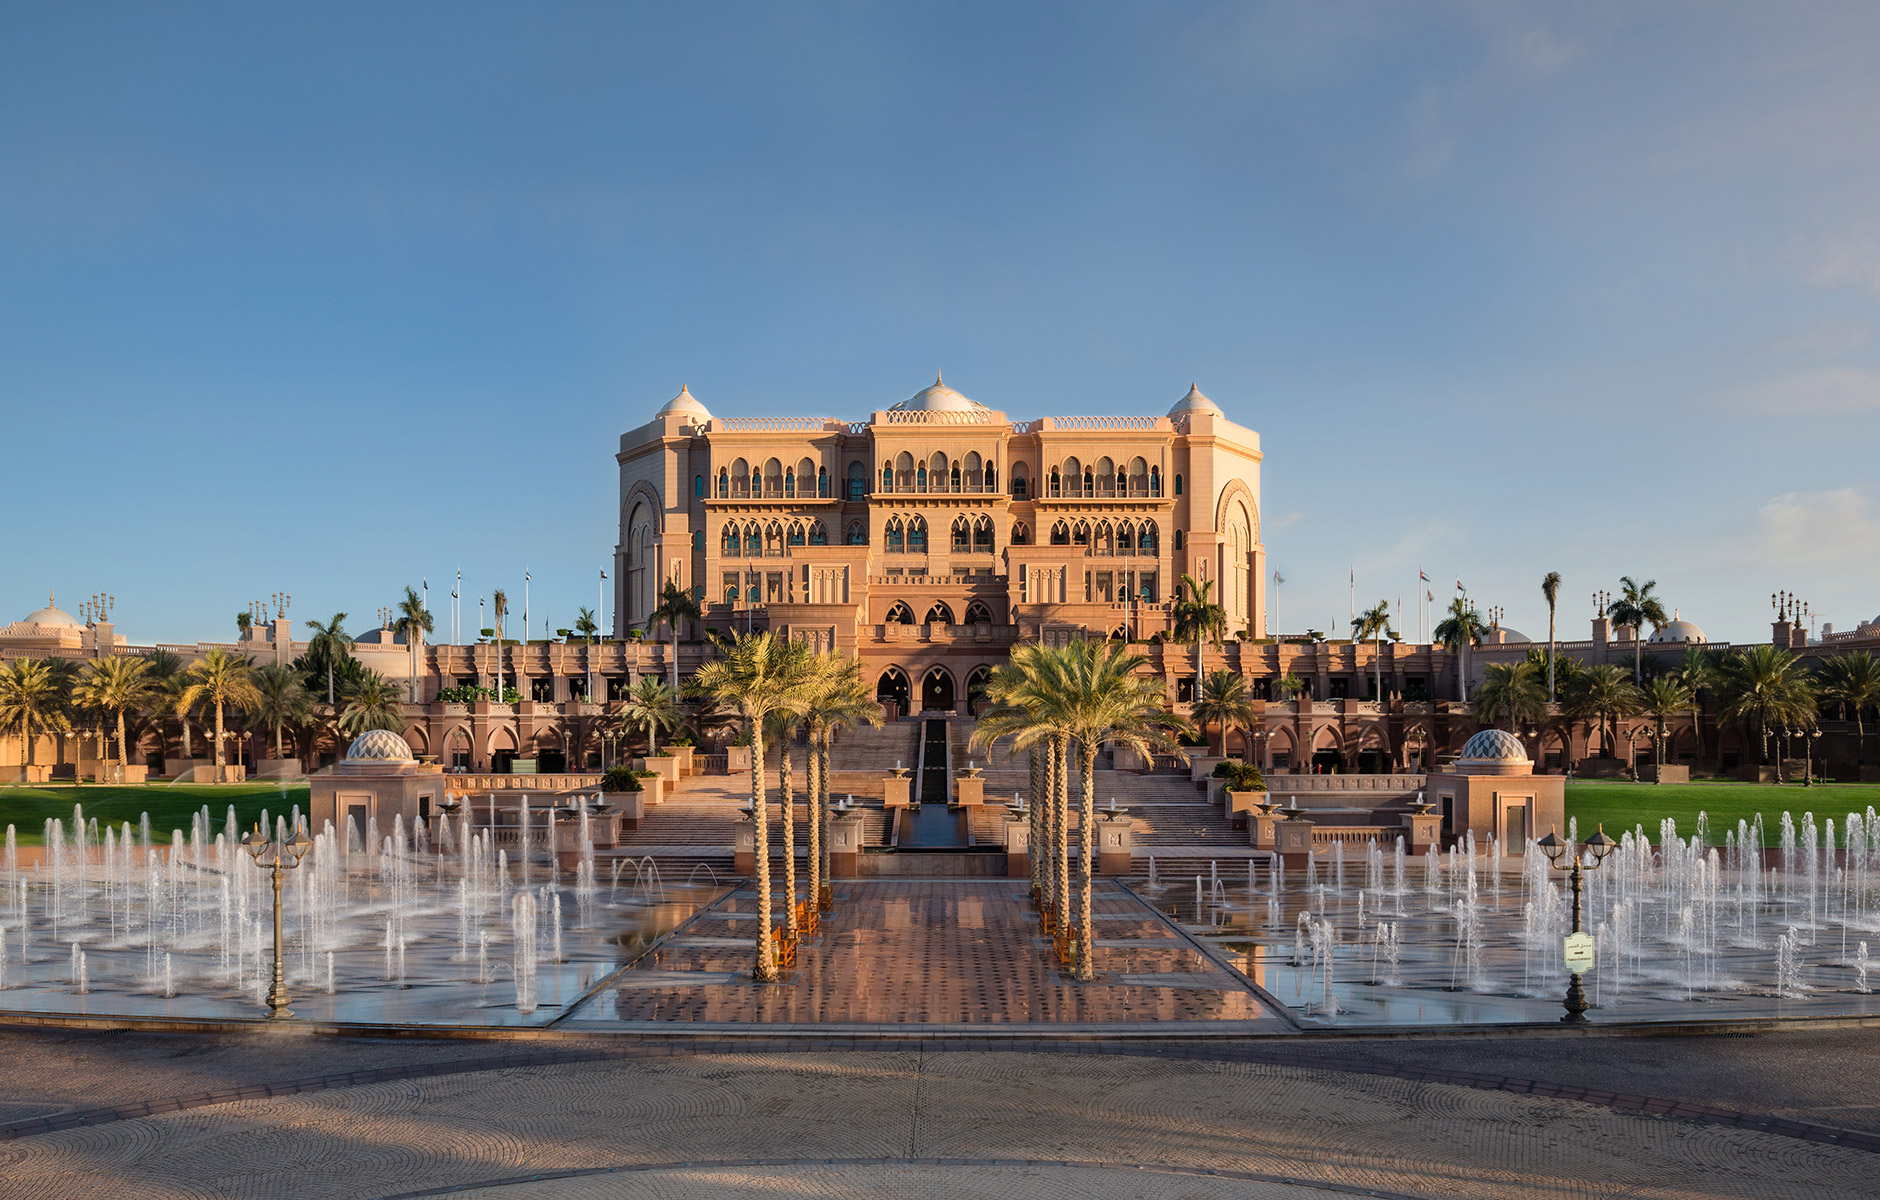 Aussenfassade eines arabischen Palastes